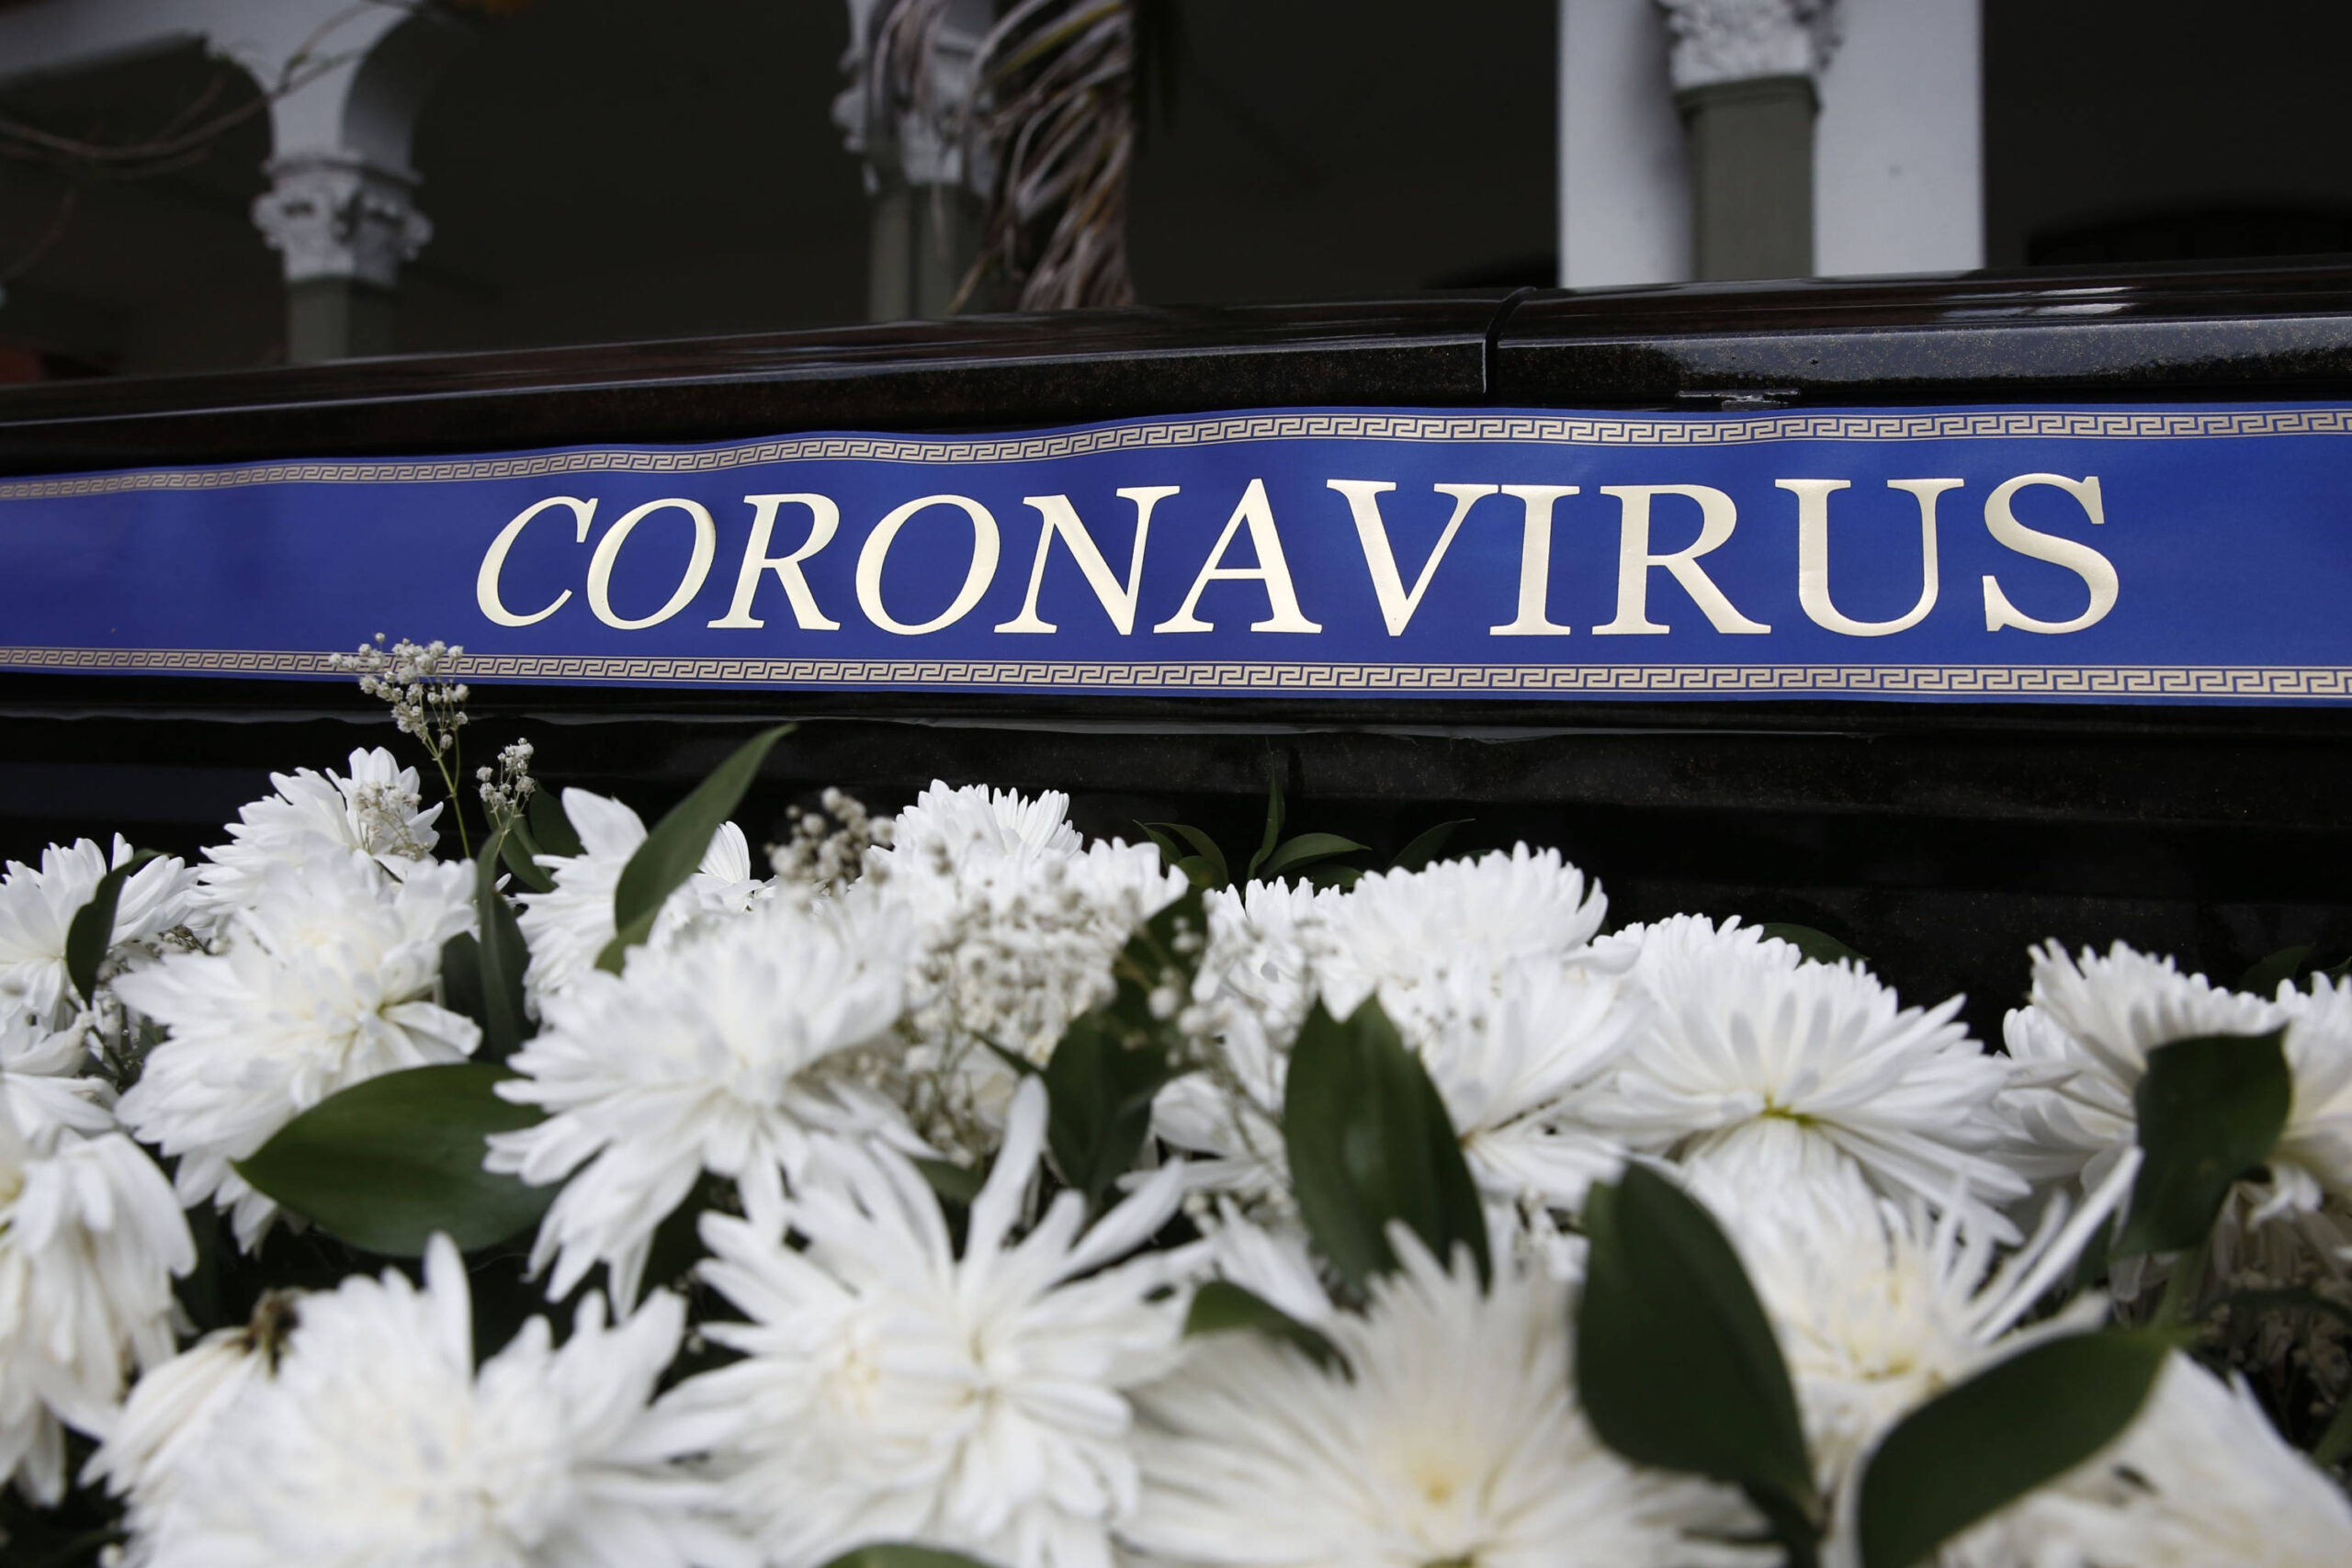 Mujer oculta que tenía Coronavirus y murió toda su familia